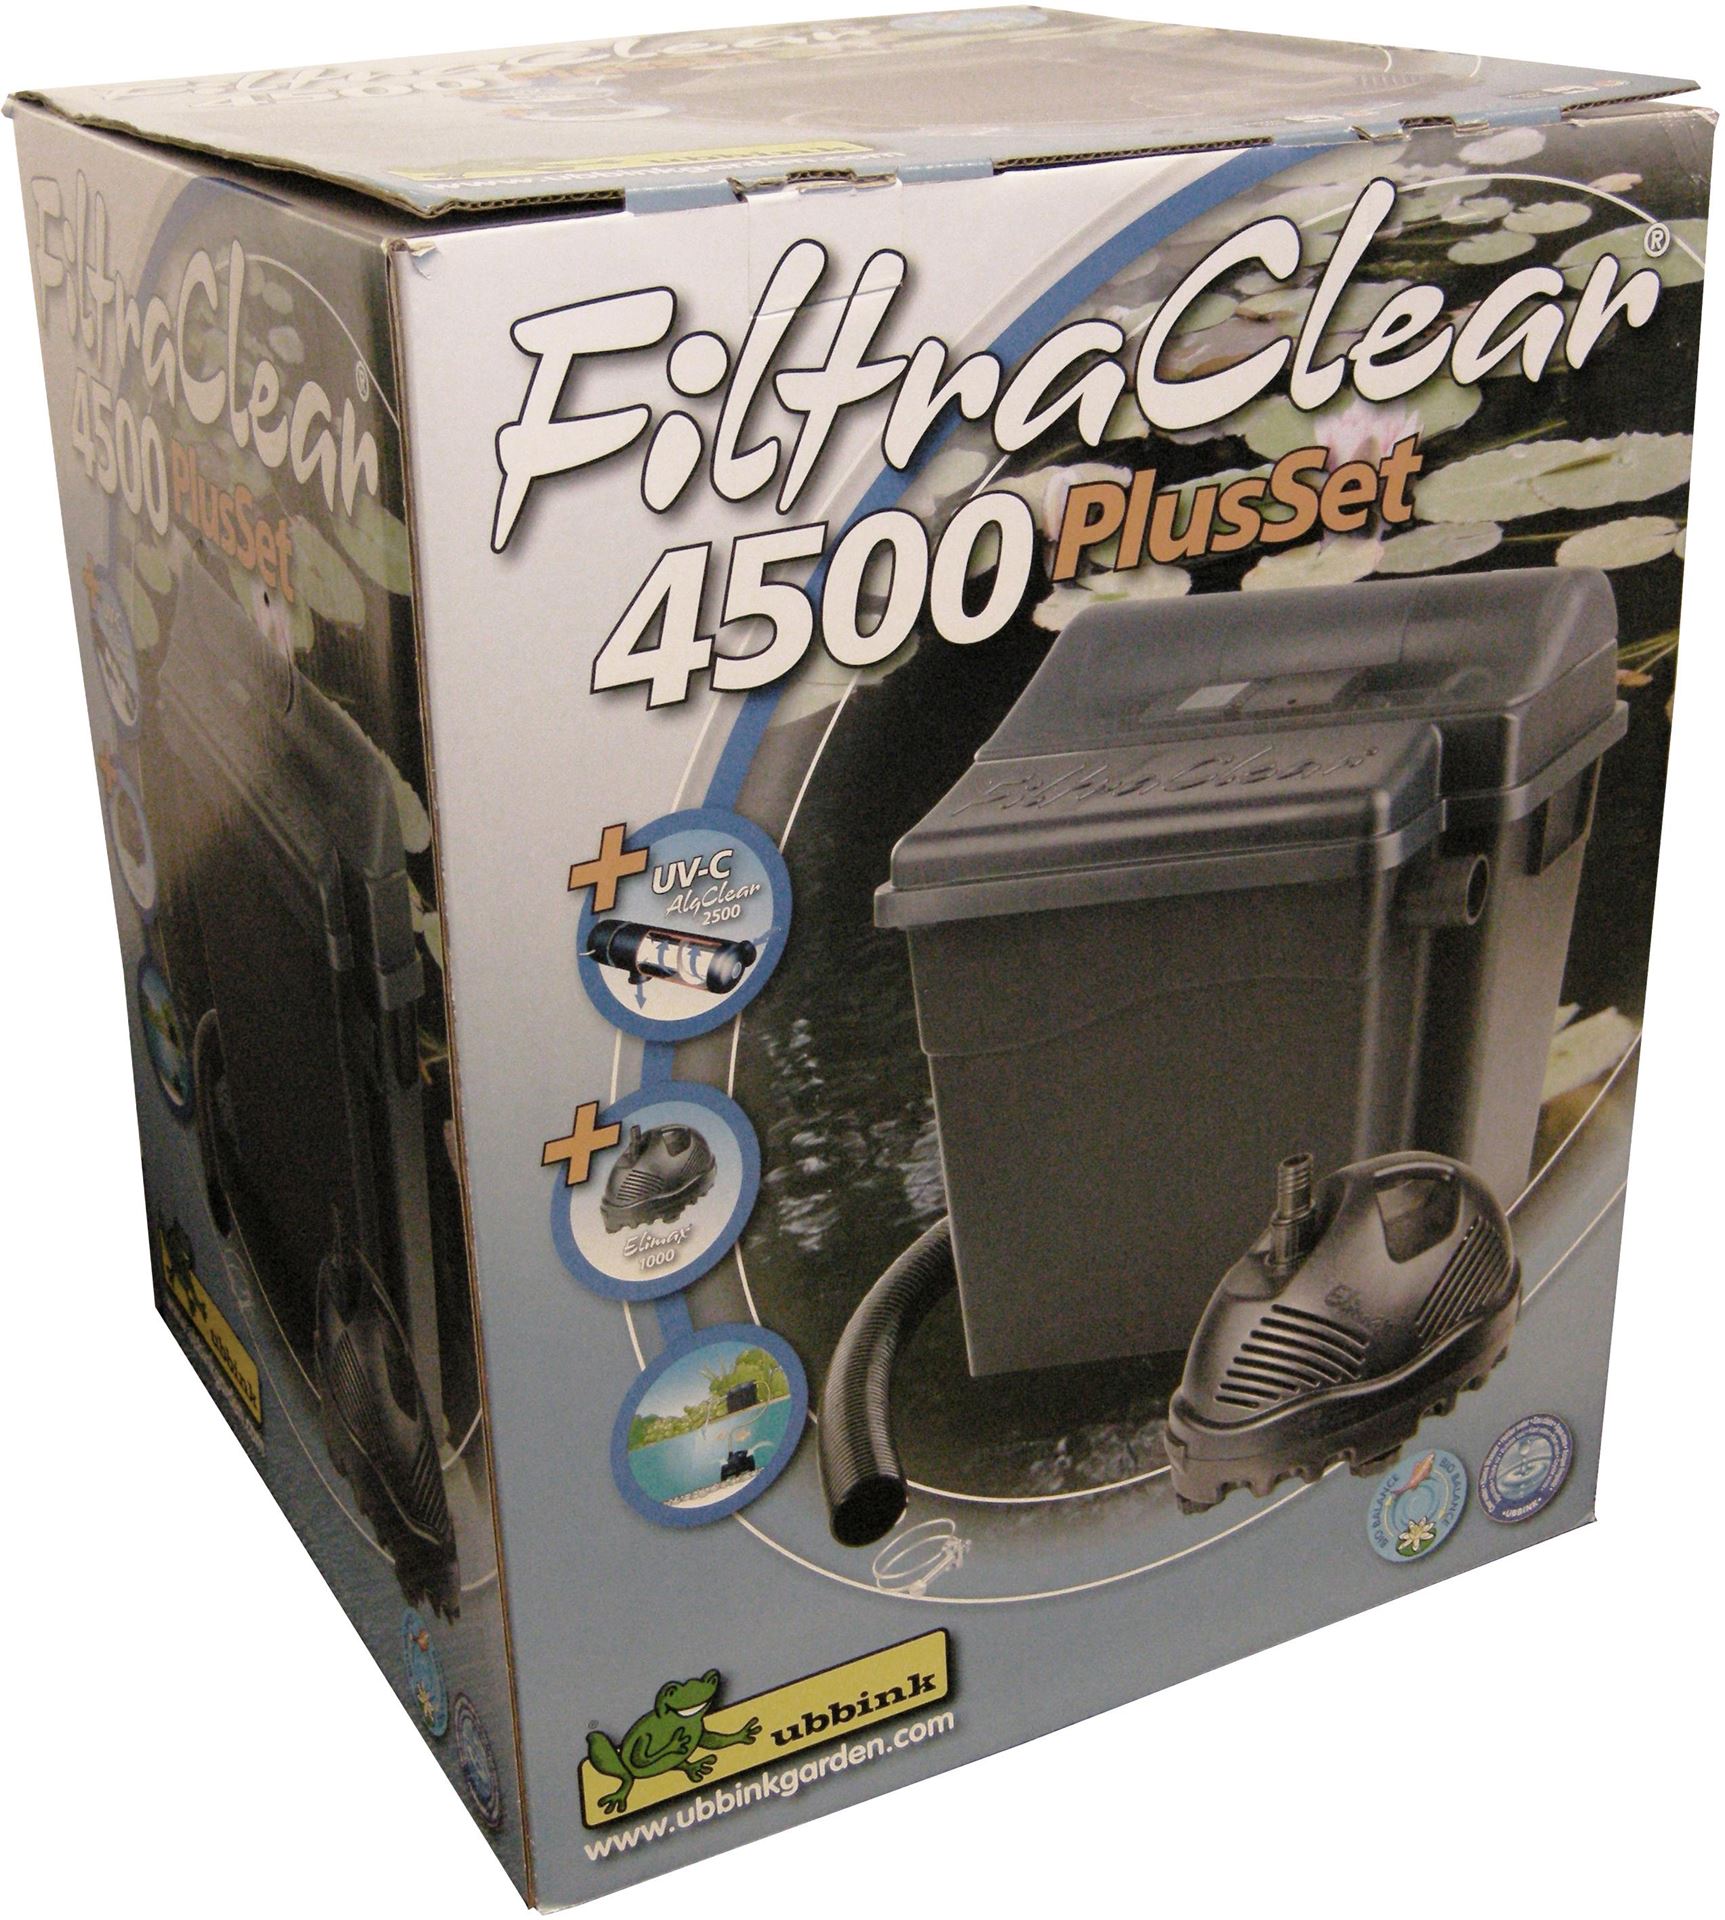 FiltraClear-4500-PlusSet-biologisch-mechanische-filtersysteem-met-2-kamers-UVC-5w-Elimax-1000-filter